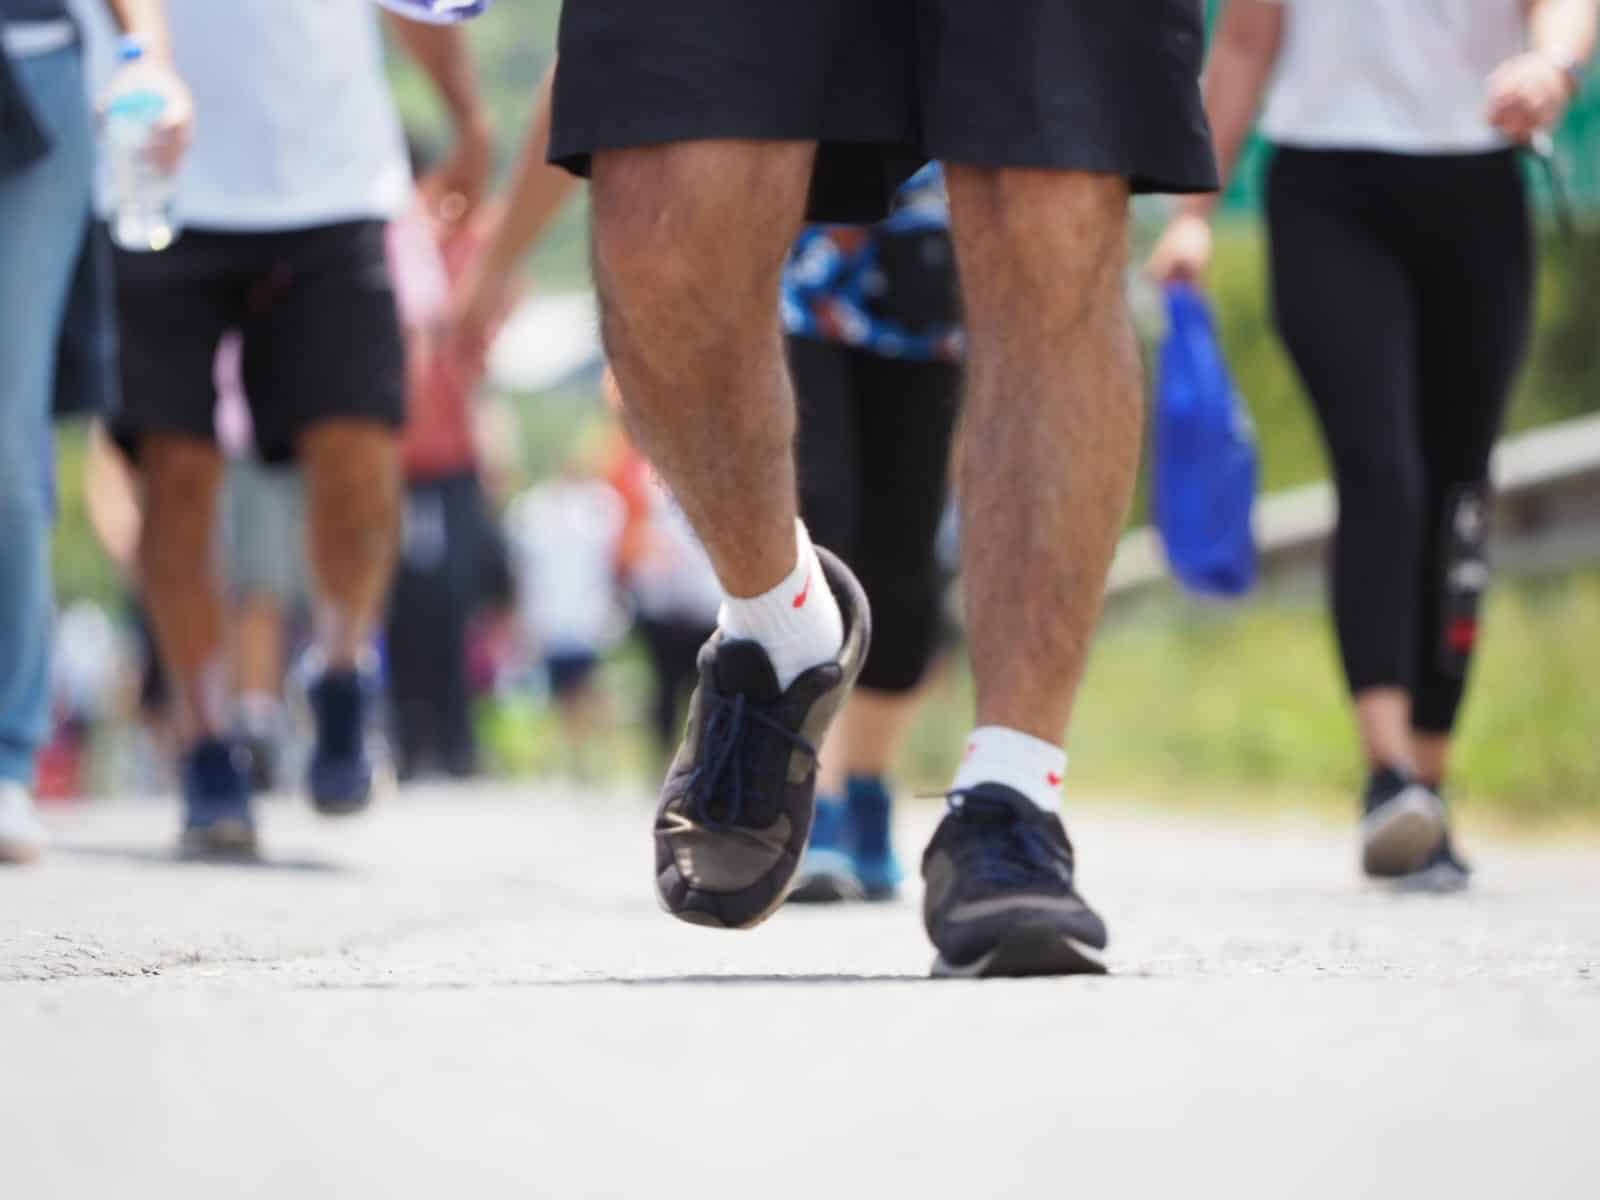 Su romería puede equivaler hasta a una media maratón: médicos recomiendan “oír al cuerpo” y considerar altura de Cartago